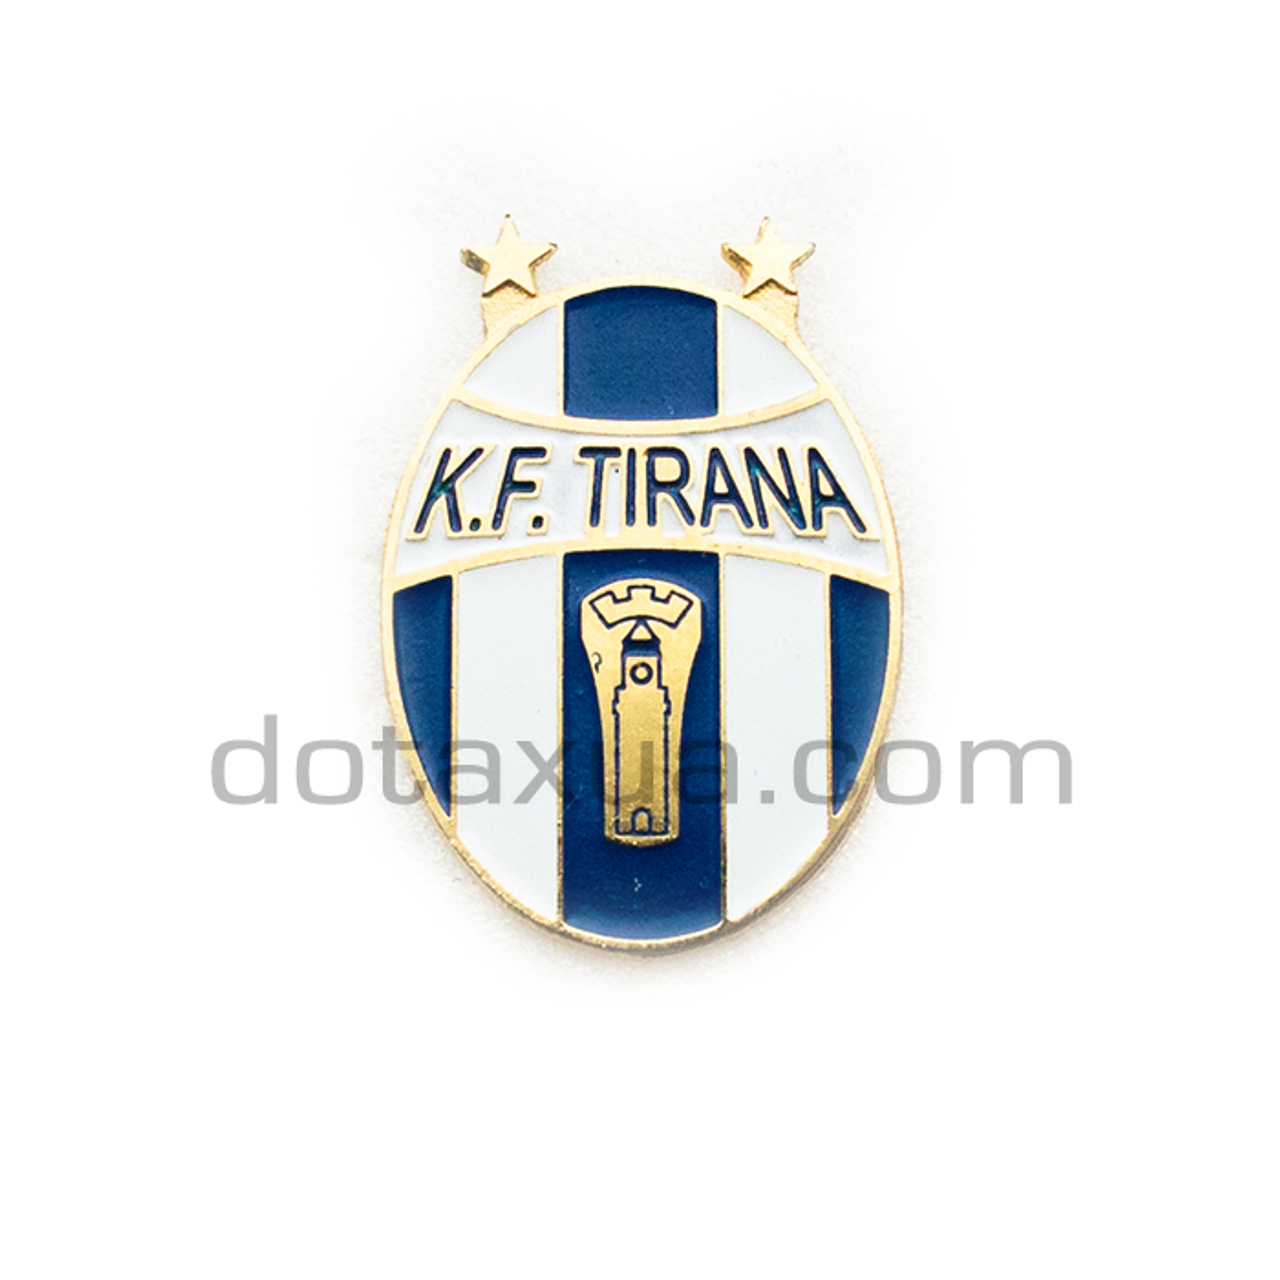 KF TIRANA ALBANIA 